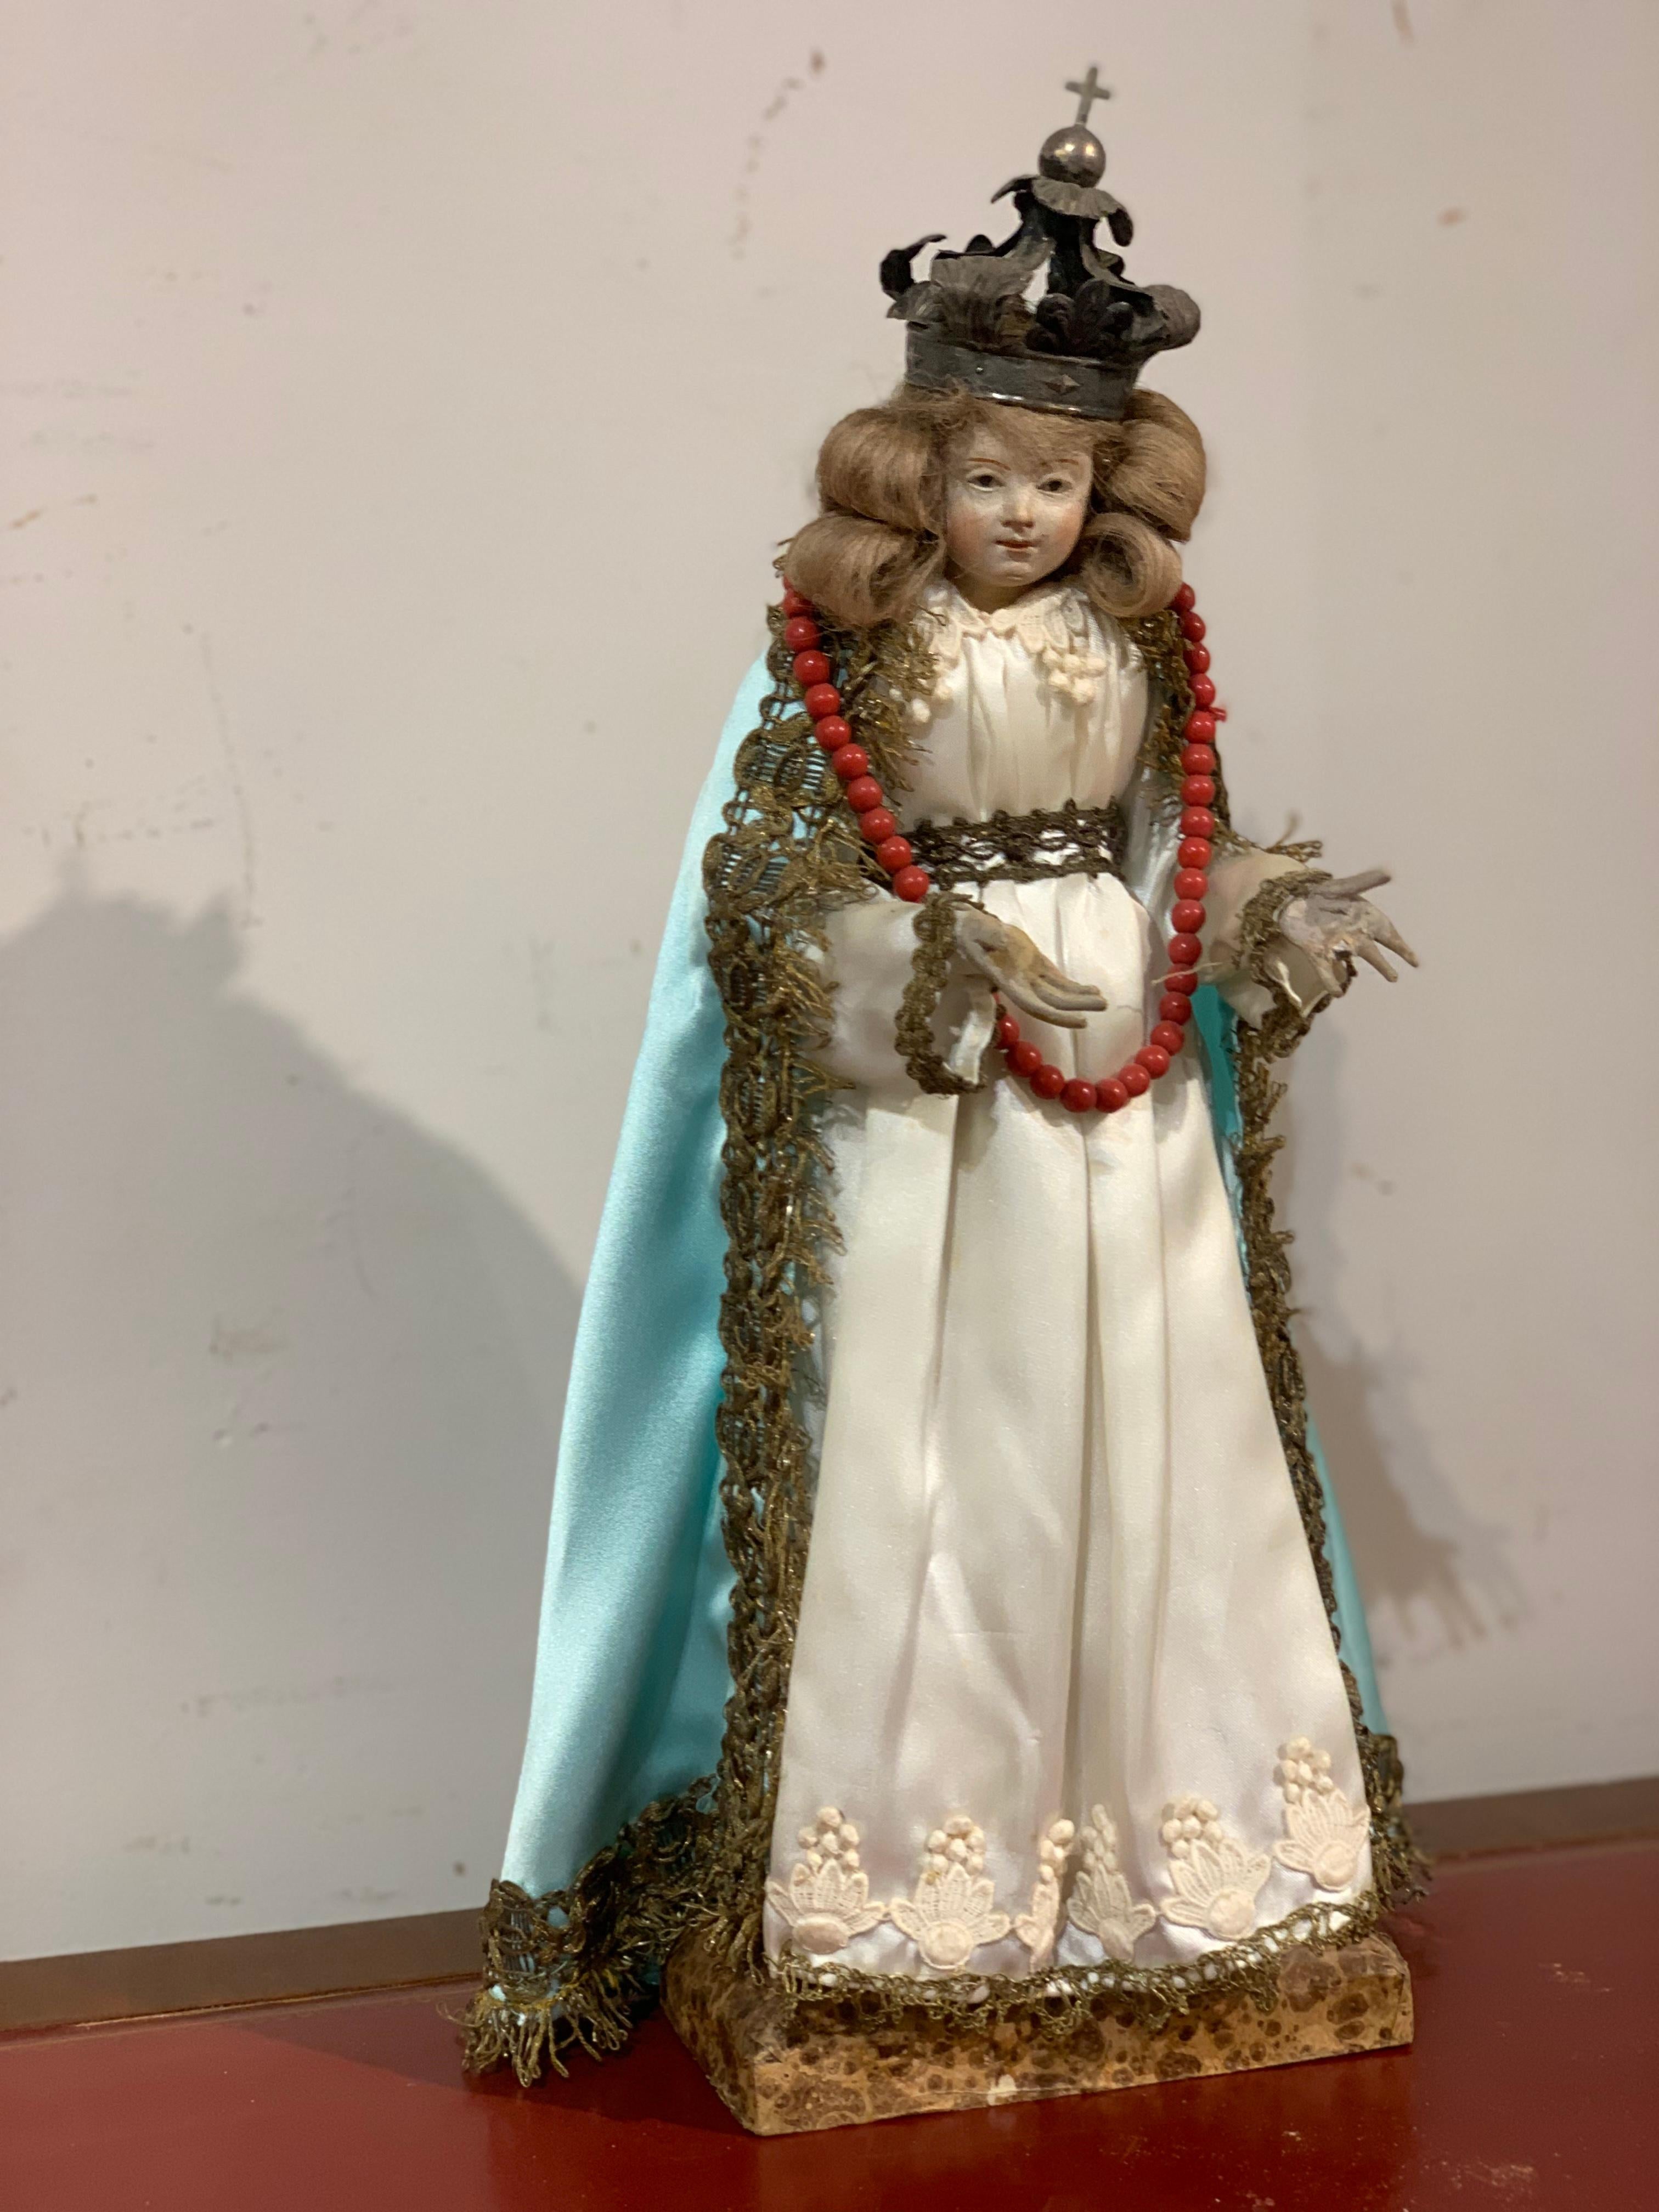 Schöne Votivfigur, die die Madonna mit Seidengewand und Silberkrone darstellt, auf einem mit Marmorimitation bemalten Holzsockel.
Kleine Größe, Herstellung in Süditalien in der zweiten Hälfte des 1700.

MASSNAHMEN: H cm 44, Sockel cm 16x9